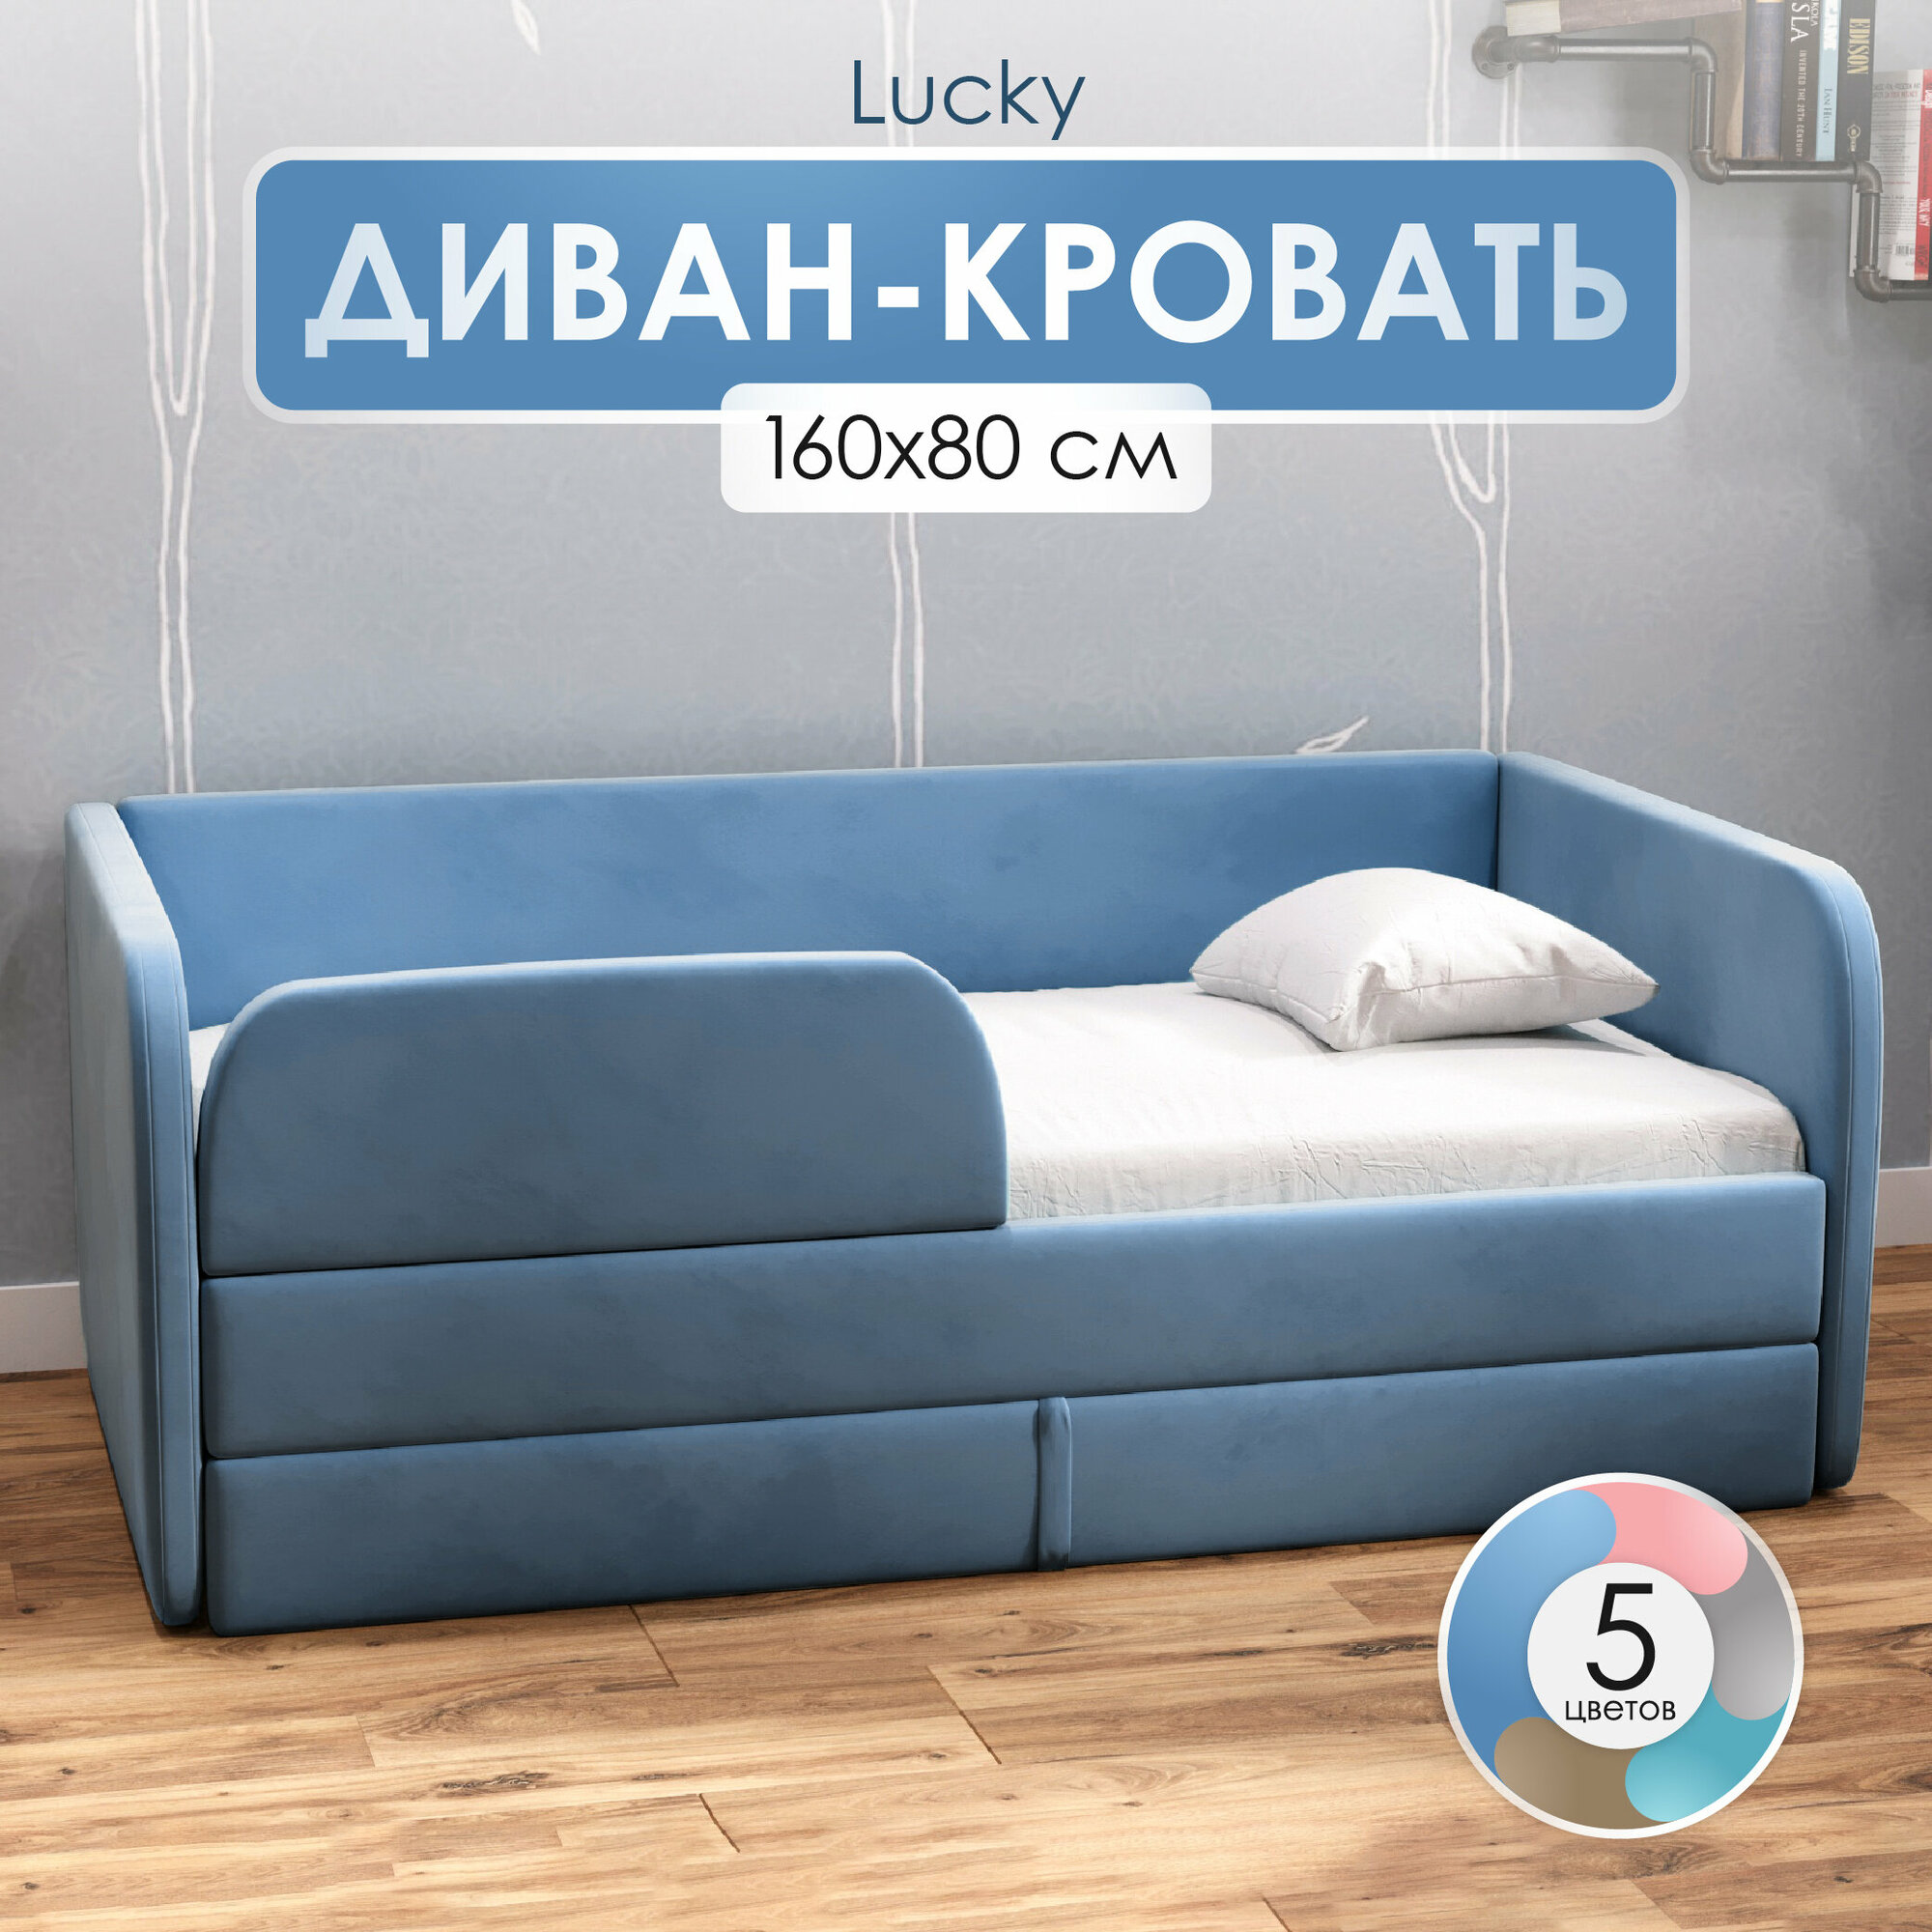 Детский диван кровать 160х80 см Lucky Голубой кровать диван от 3 лет, с бортиками и выкатным ящиком, тахта кровать софа односпальная подростковая